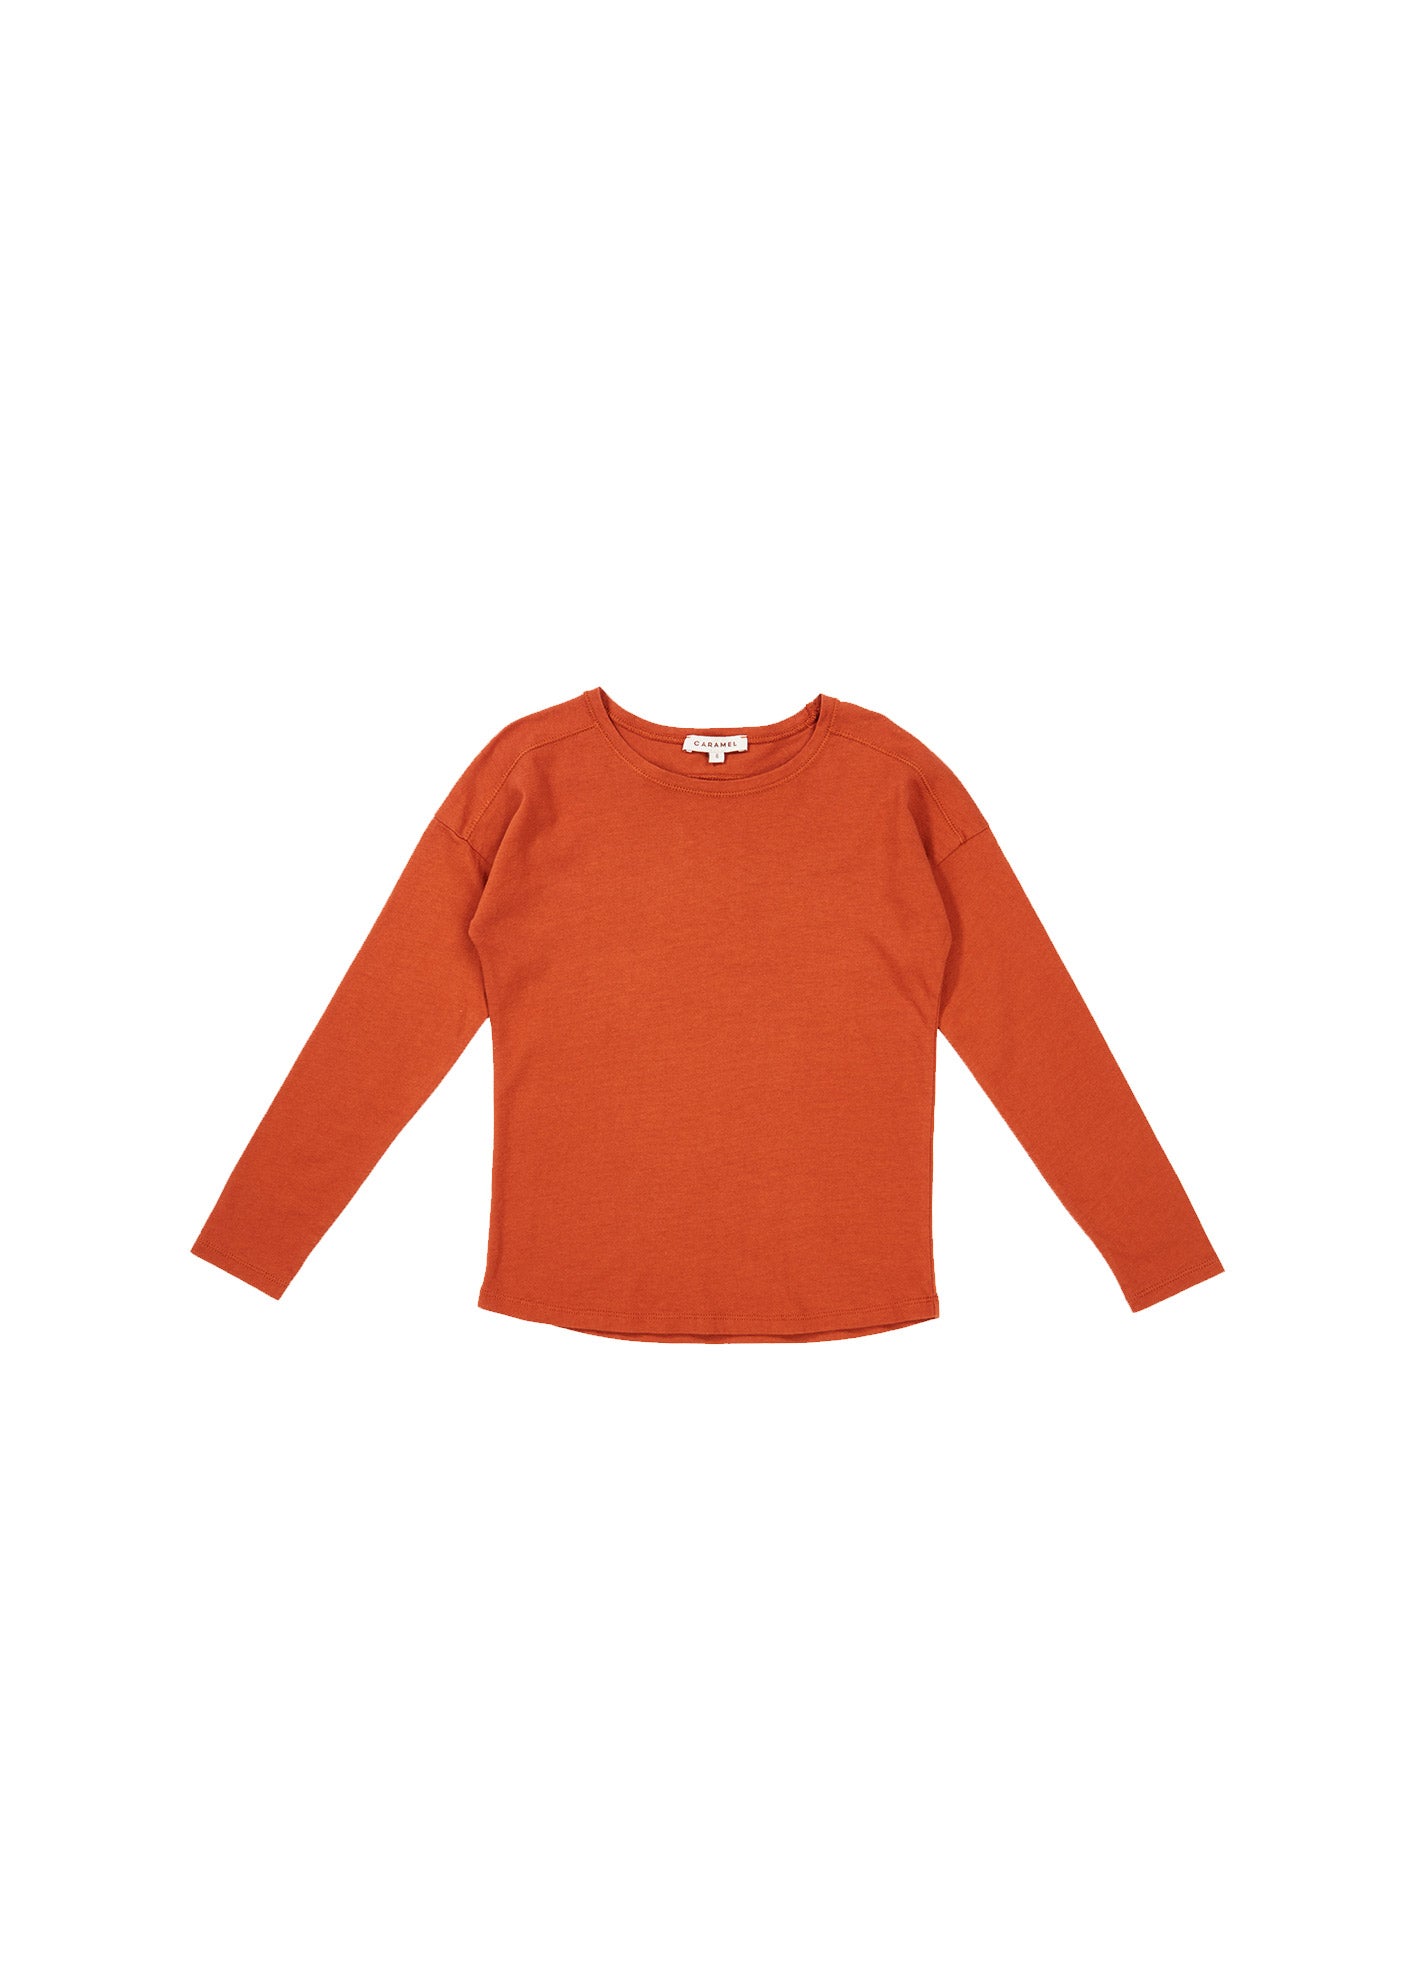 Girls Orange Cotton Shirt